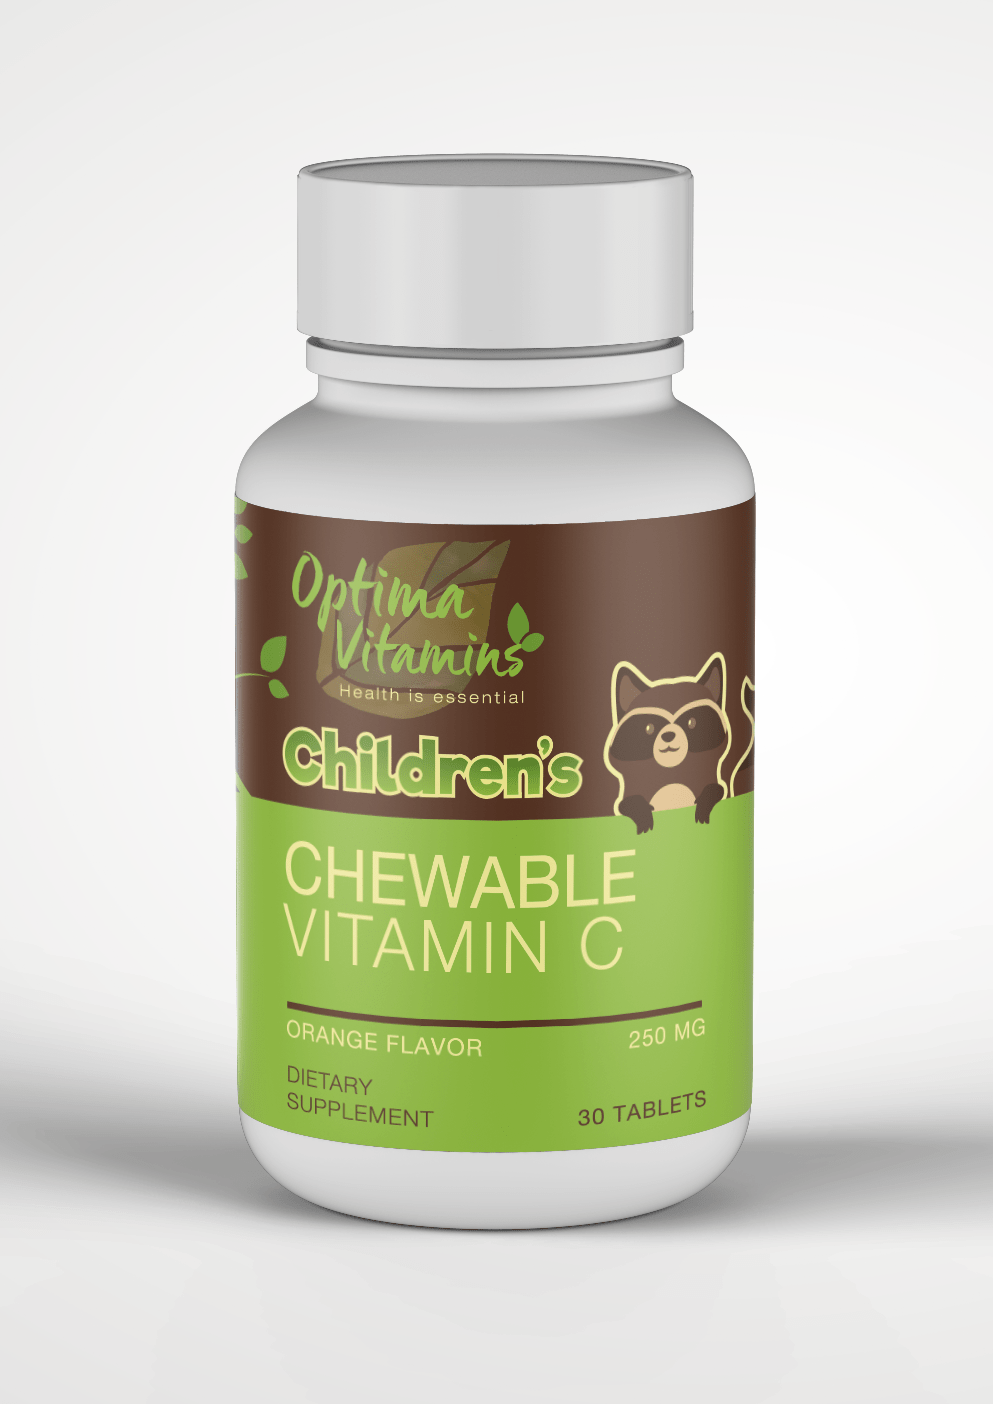 Children’s Chewable Vitamin C - Optima Vitamins